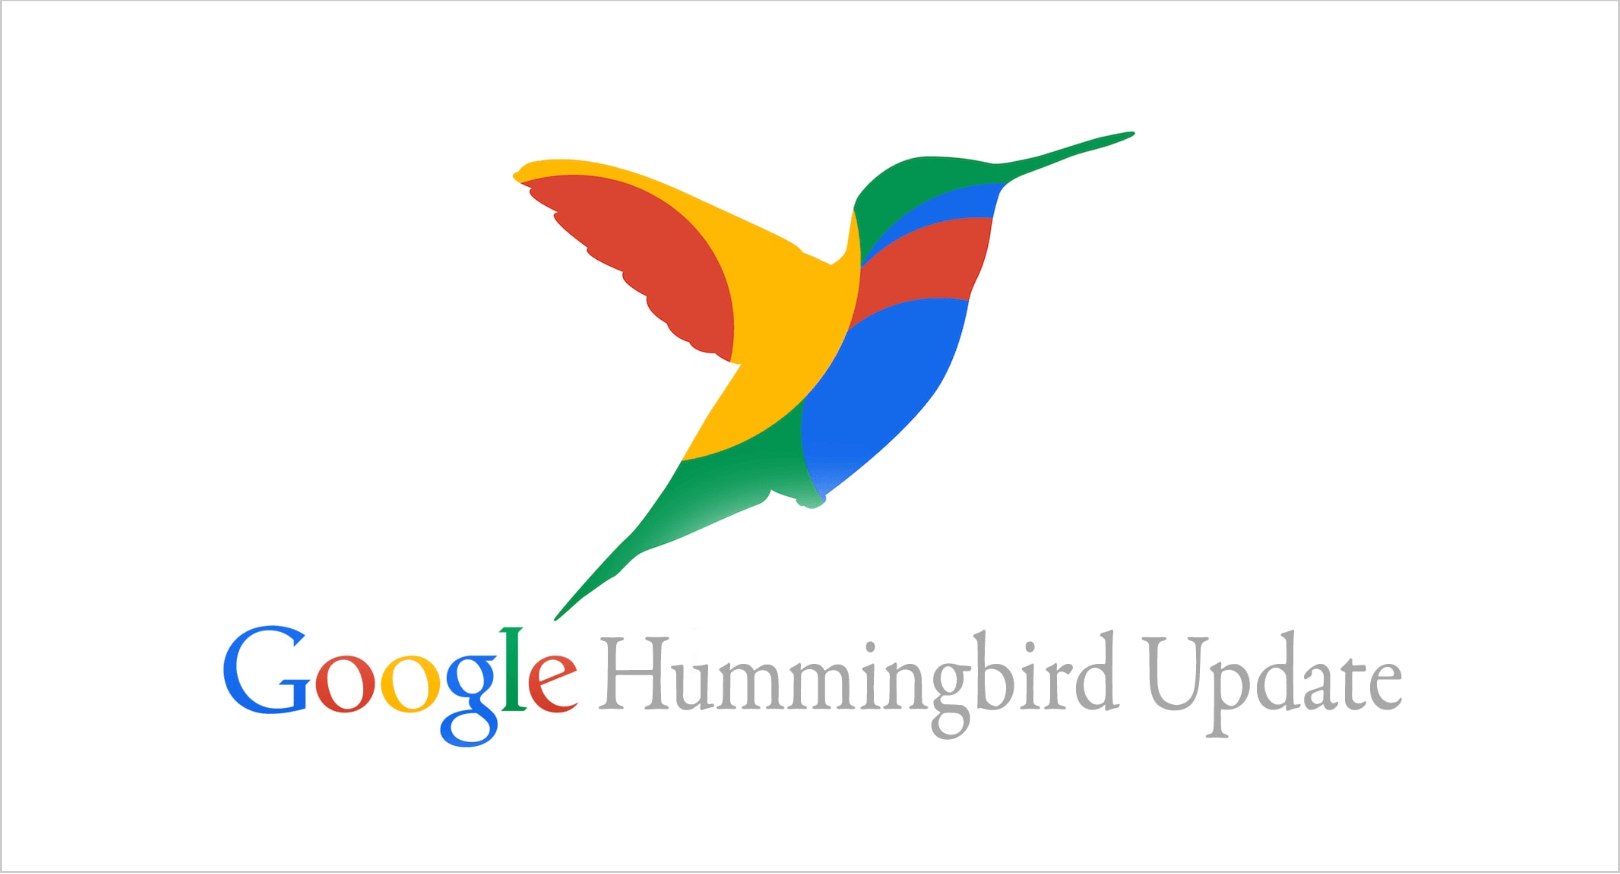 Google Hummingbird 업데이트